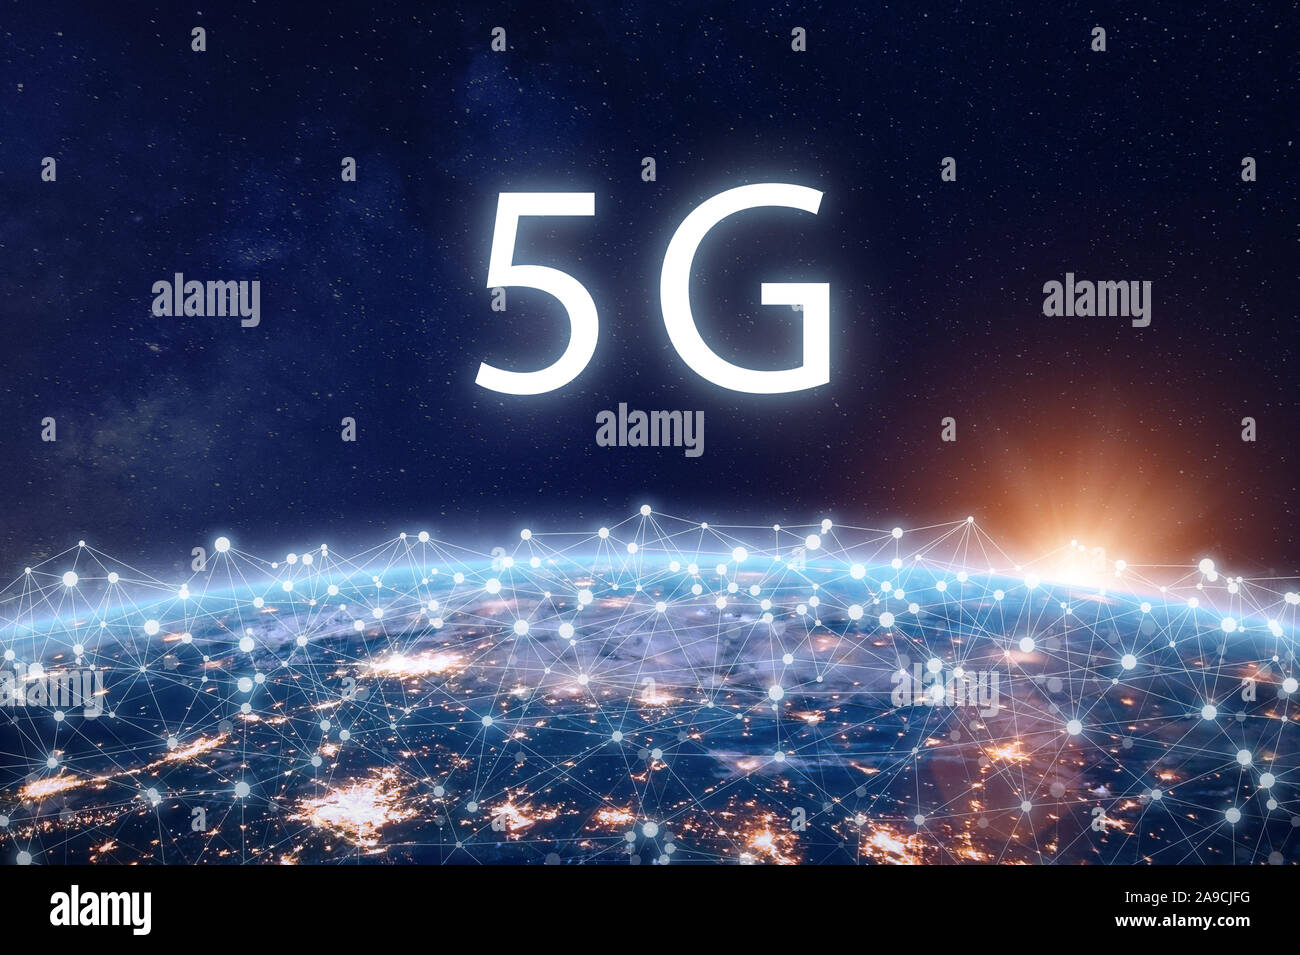 L'internet mobile 5G Réseau de télécommunications haut débit sans fil avec technologie de connexion de données pour les smartphones et Ito. Système de cinquième génération depl Banque D'Images